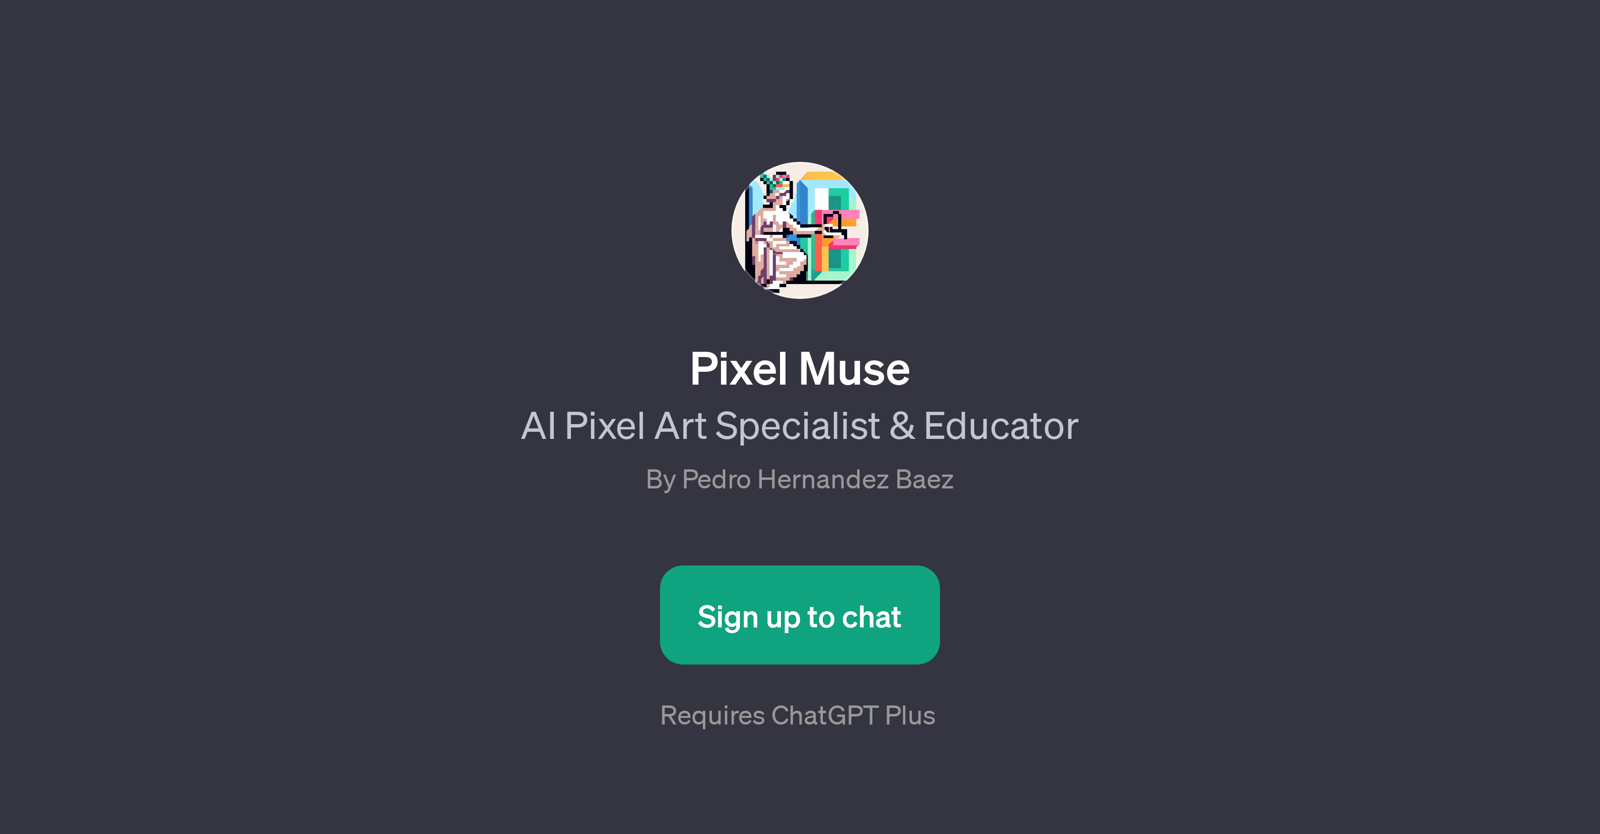 Pixel Muse website